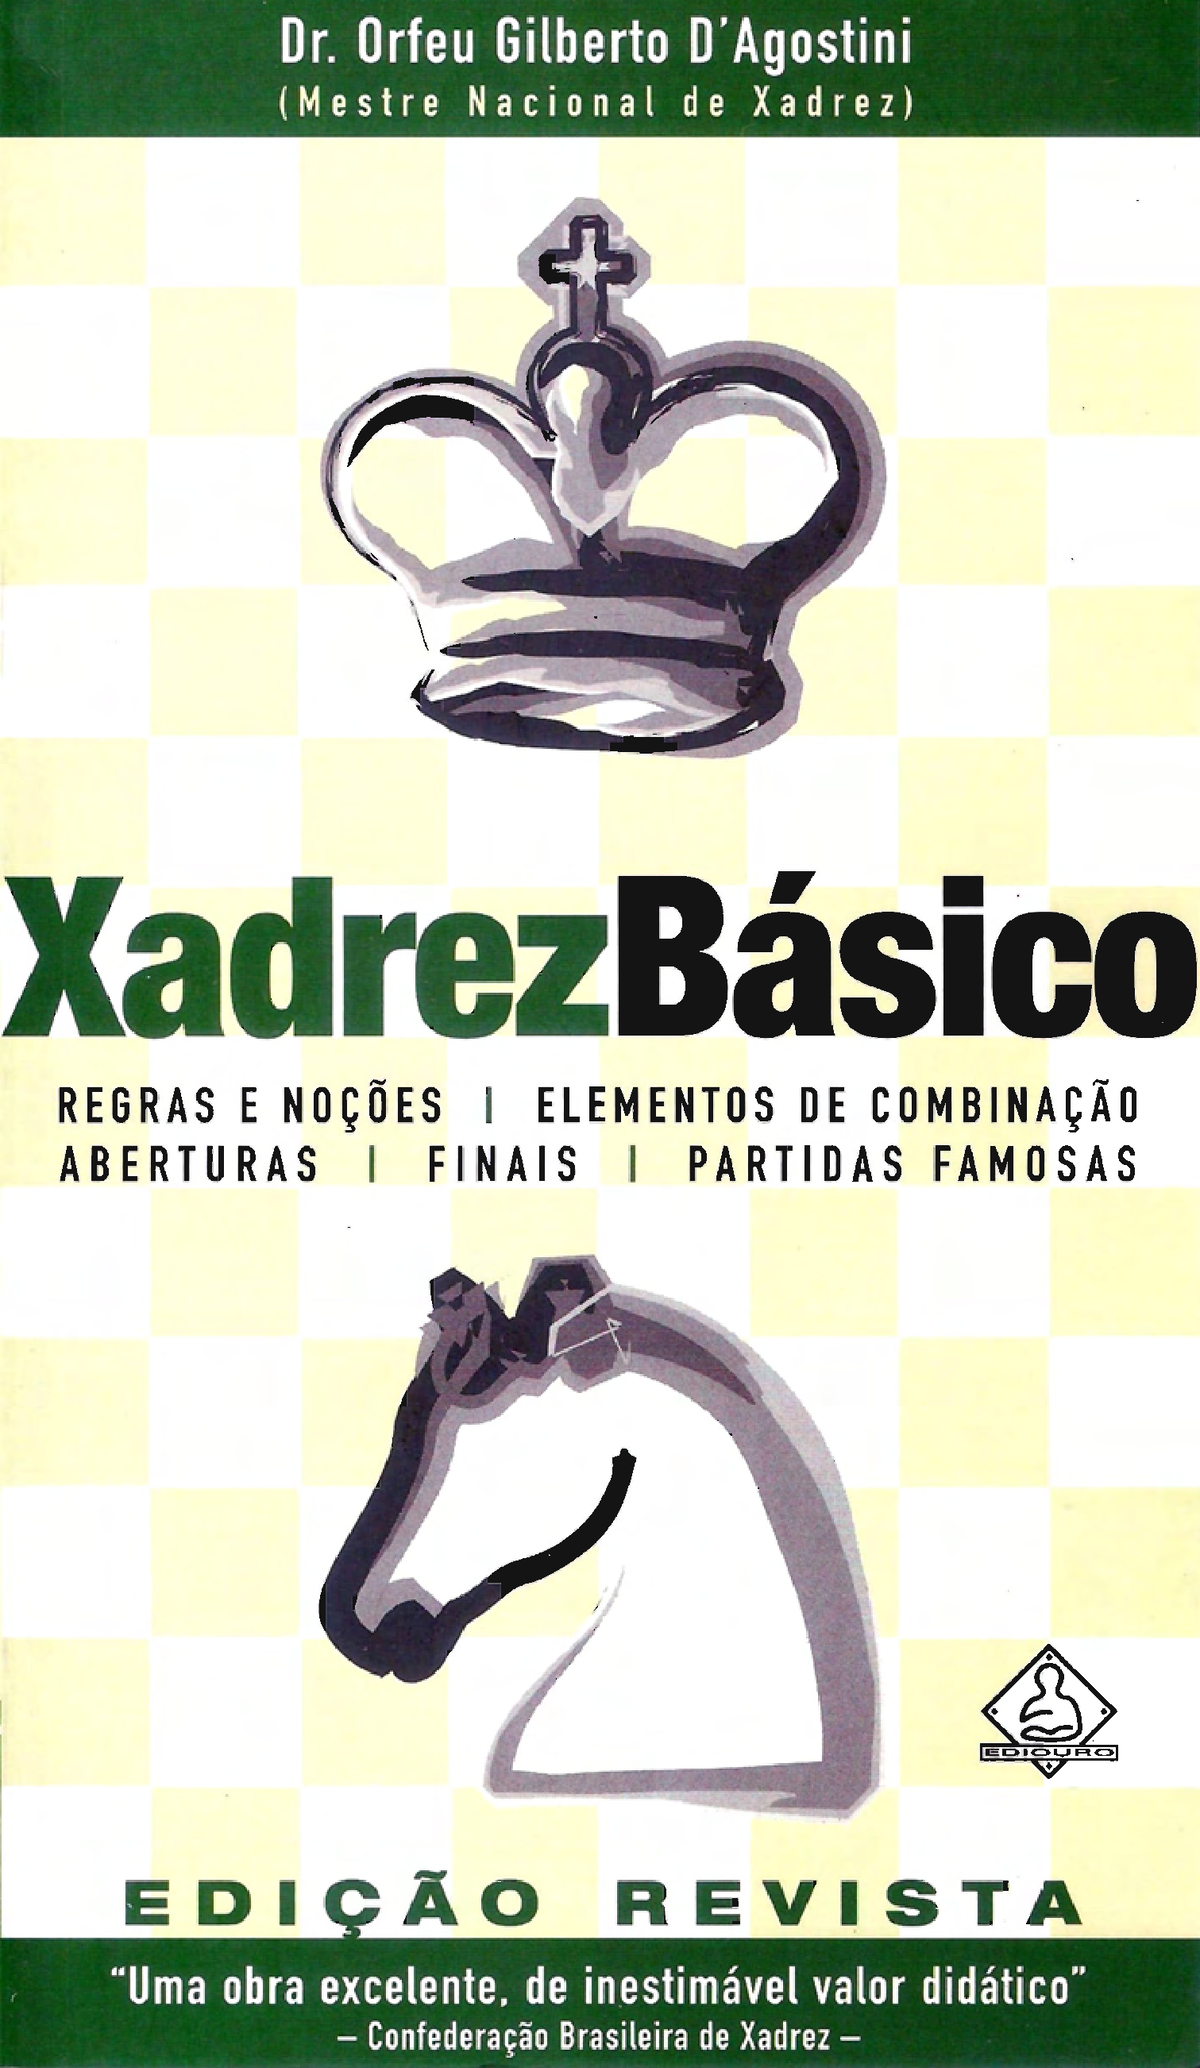 Agostini-Xadrez Básico - ladrezBa REGRAS E I ELEMENTOS ABERTURAS I FINAlS I  PAR 5 a edig80 / 1a - Studocu